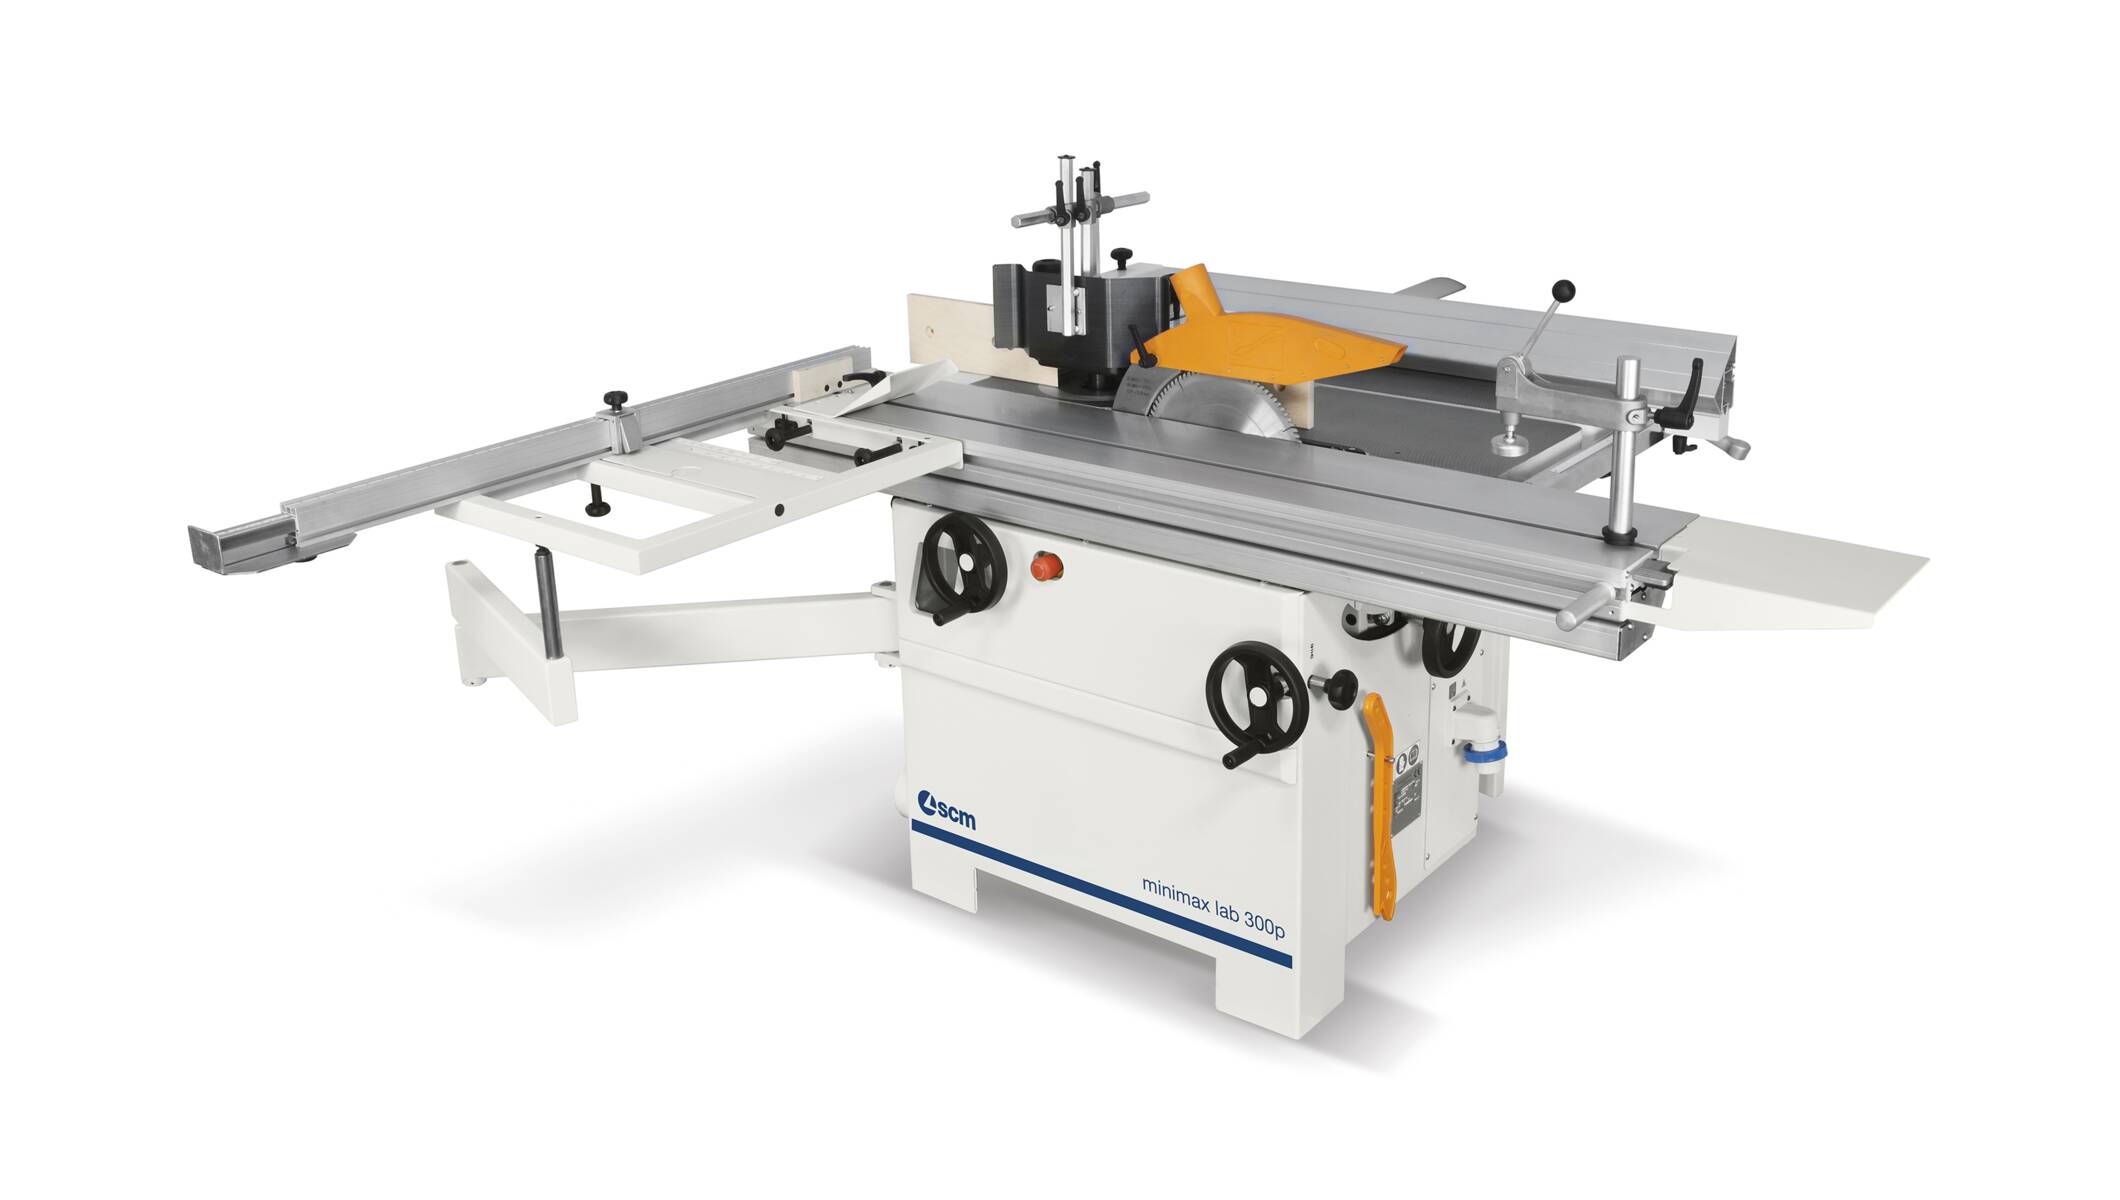 Máquinas para carpintería - Máquinas combinadas universales - minimax lab 300p